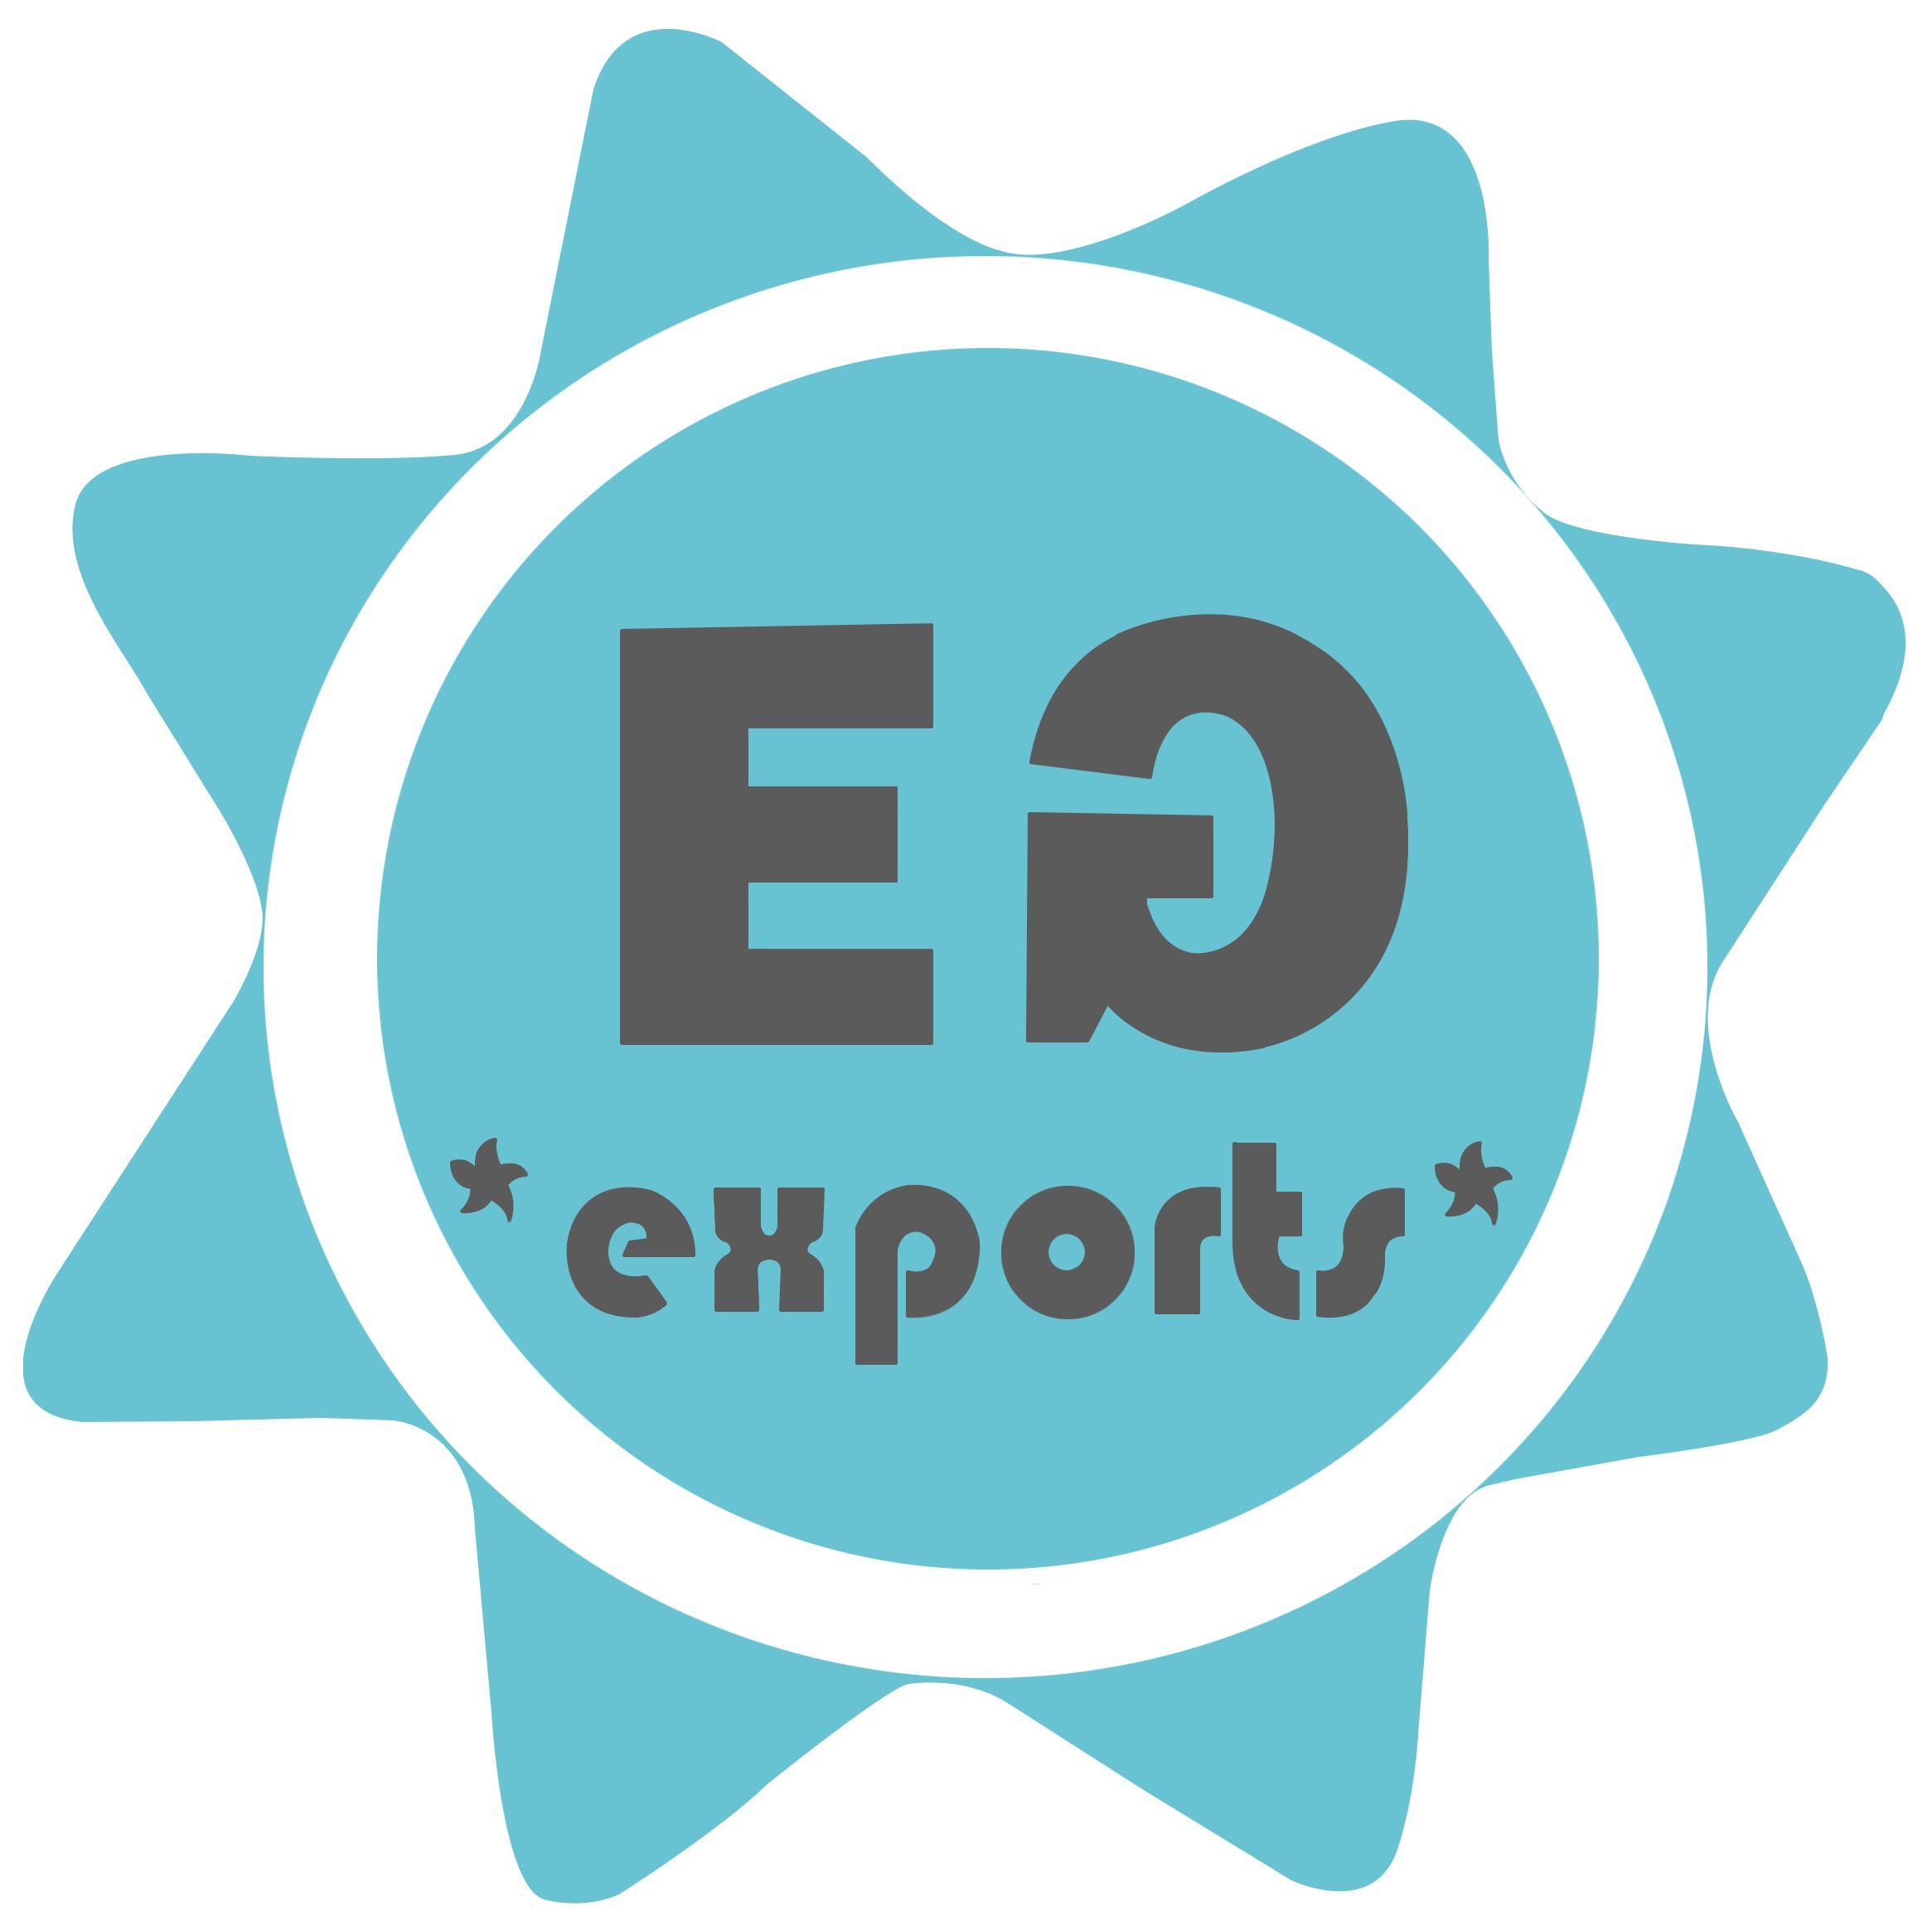 Eden Garden Exports가 Odoo를 활용하여 한단계 업그레이드를 이루어낸 사례 